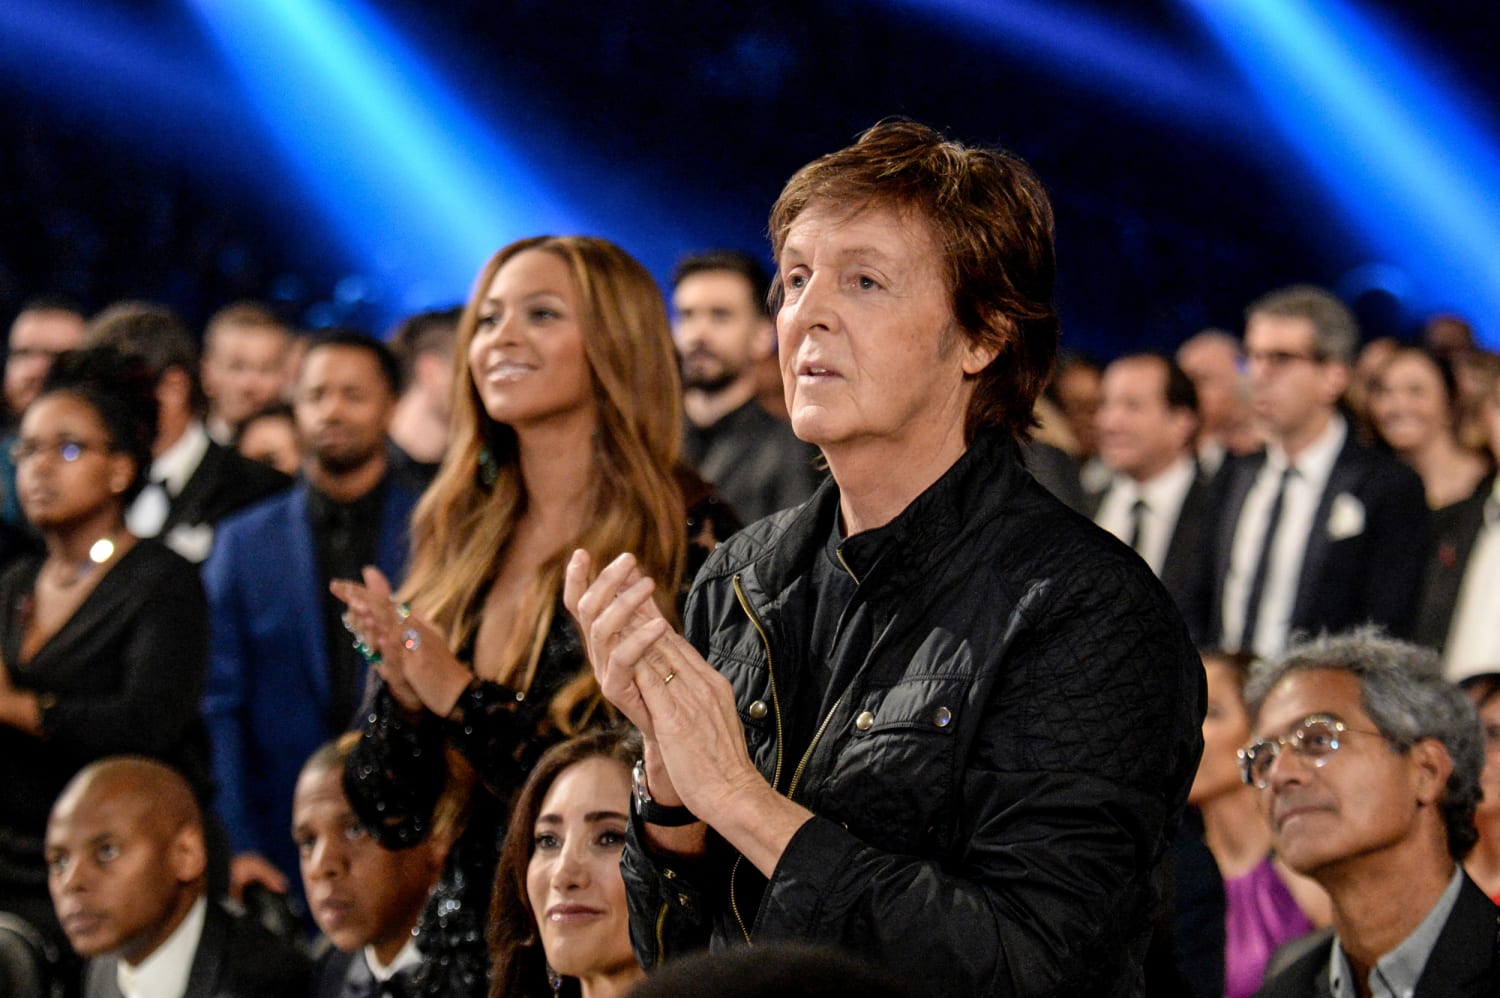 Paul McCartney juicht Beyoncé's cover van 'Blackbird' toe, terwijl anderen hem uit elkaar proberen te halen